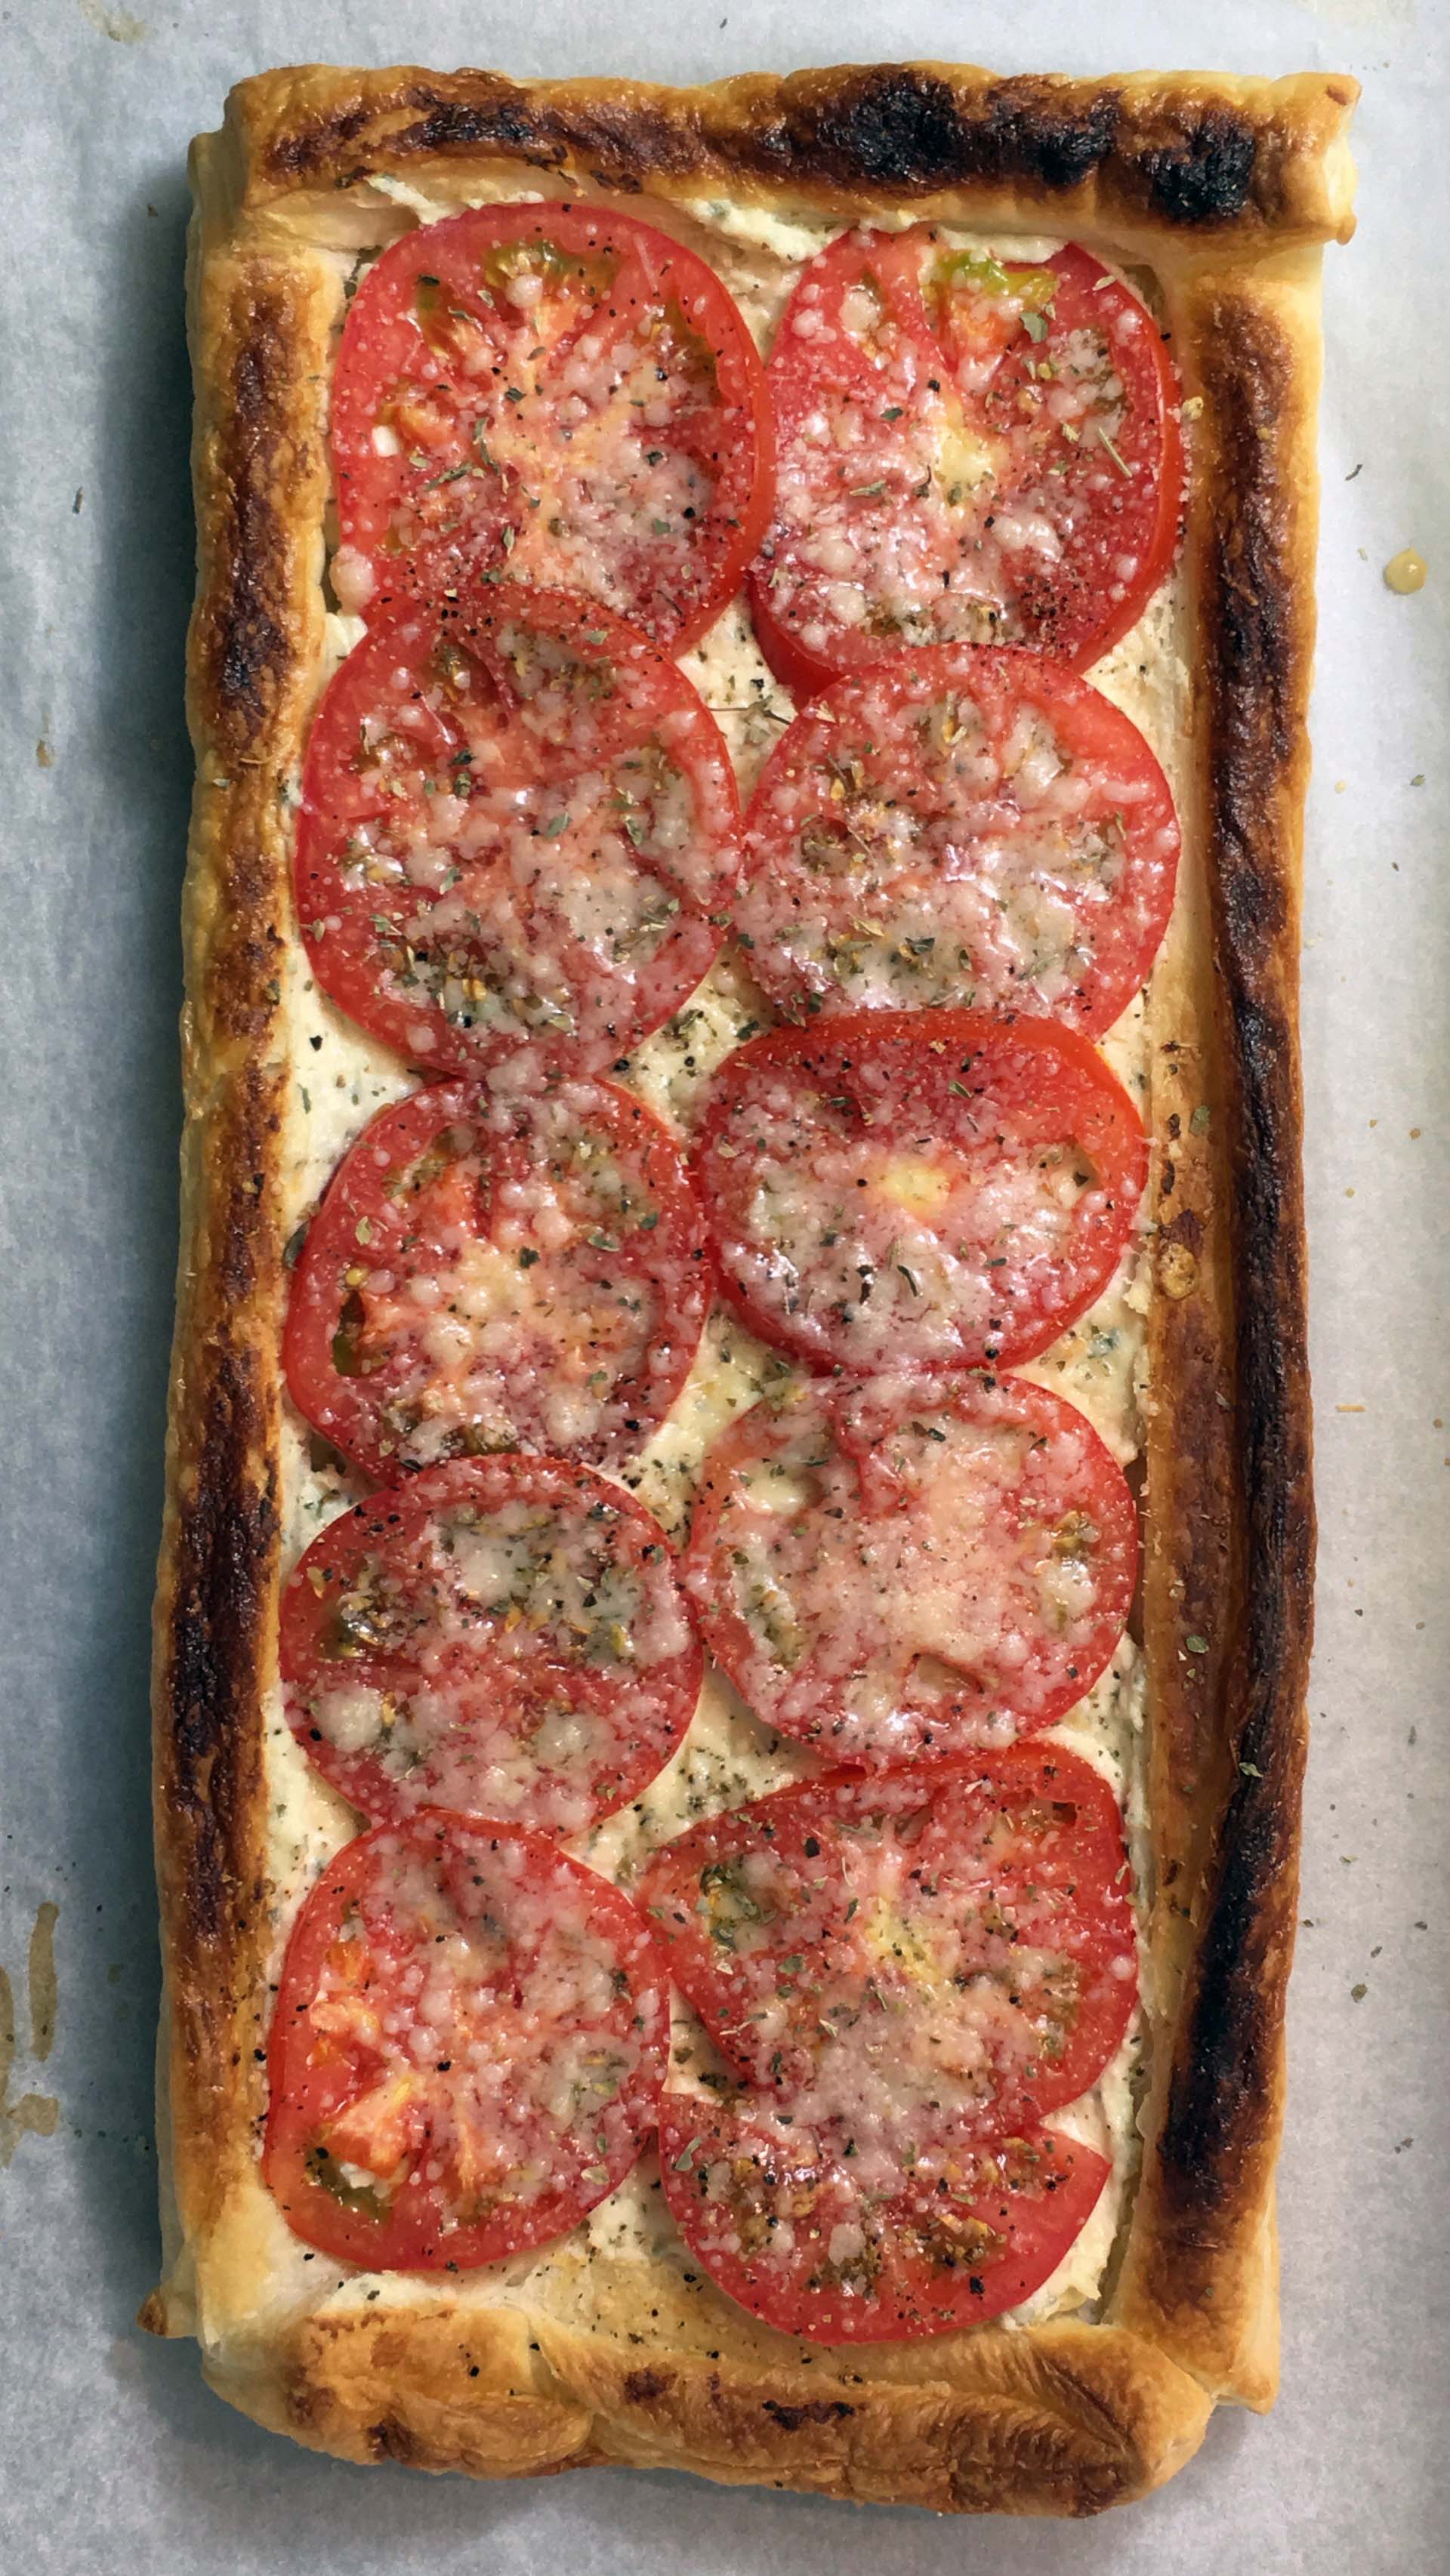 tomato tart